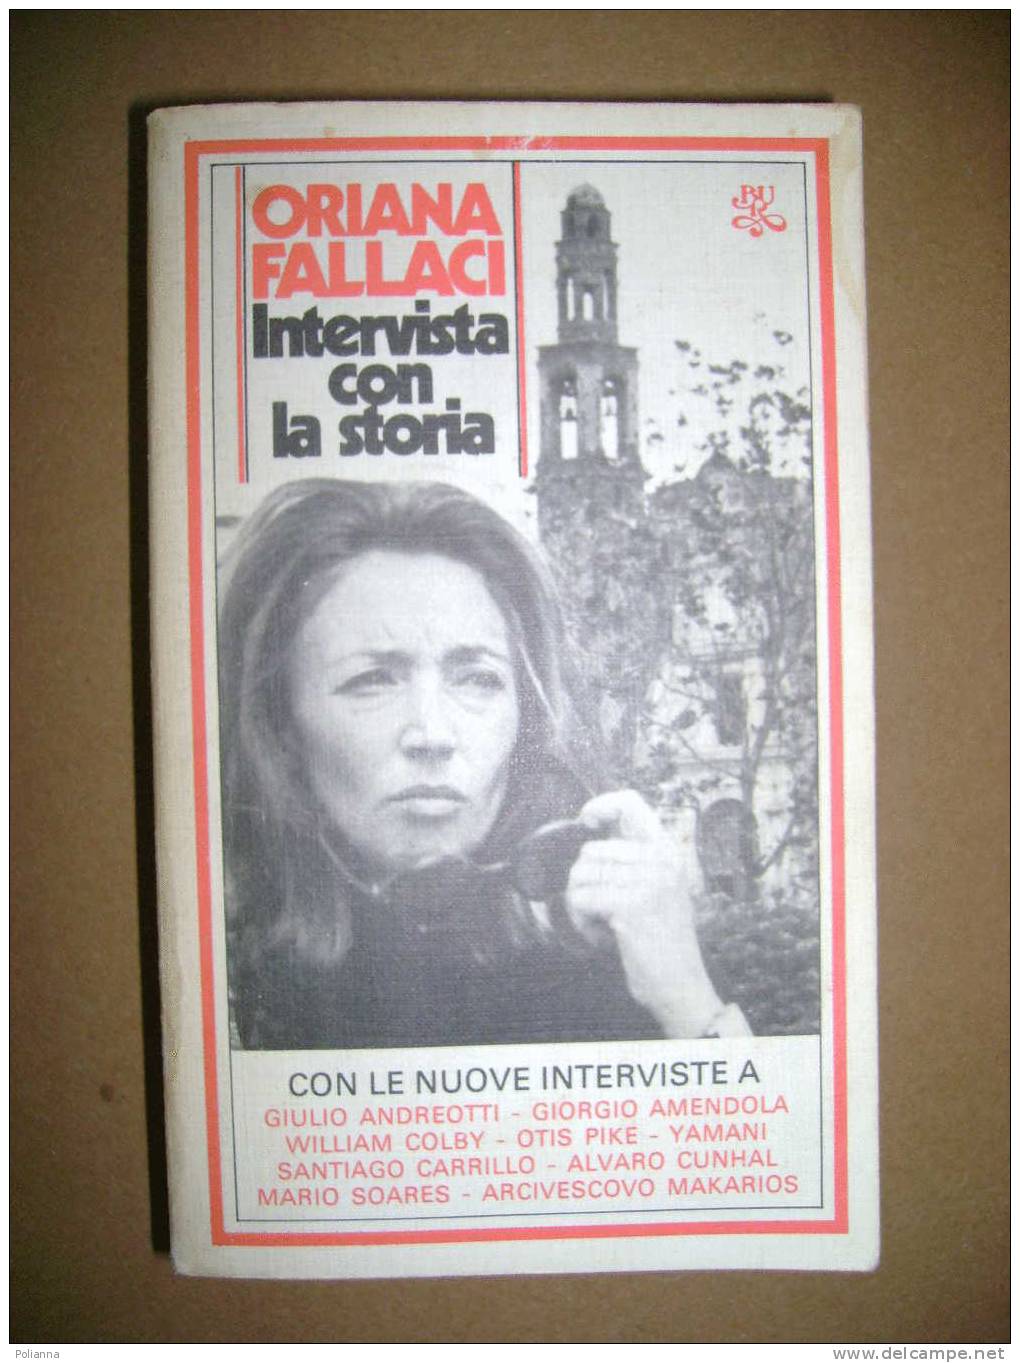 PAC/20 Oriana Fallaci INTERVISTA CON LA STORIA Bur Rizzoli 1980 - Giornalismo